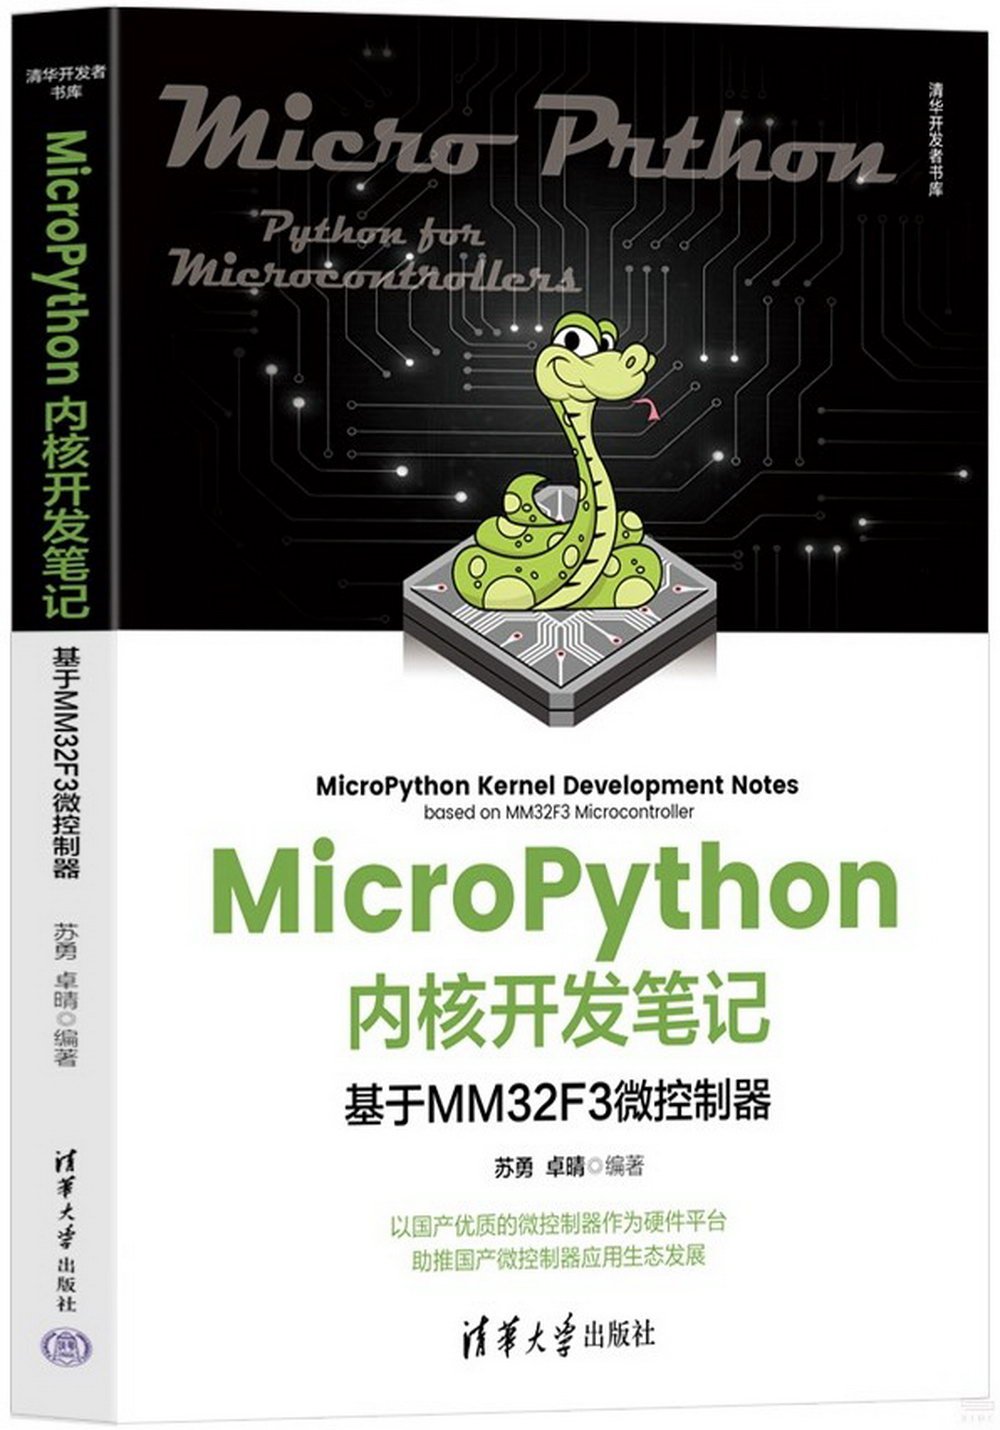 MicroPython內核開發筆記：基於MM32F3微控制器